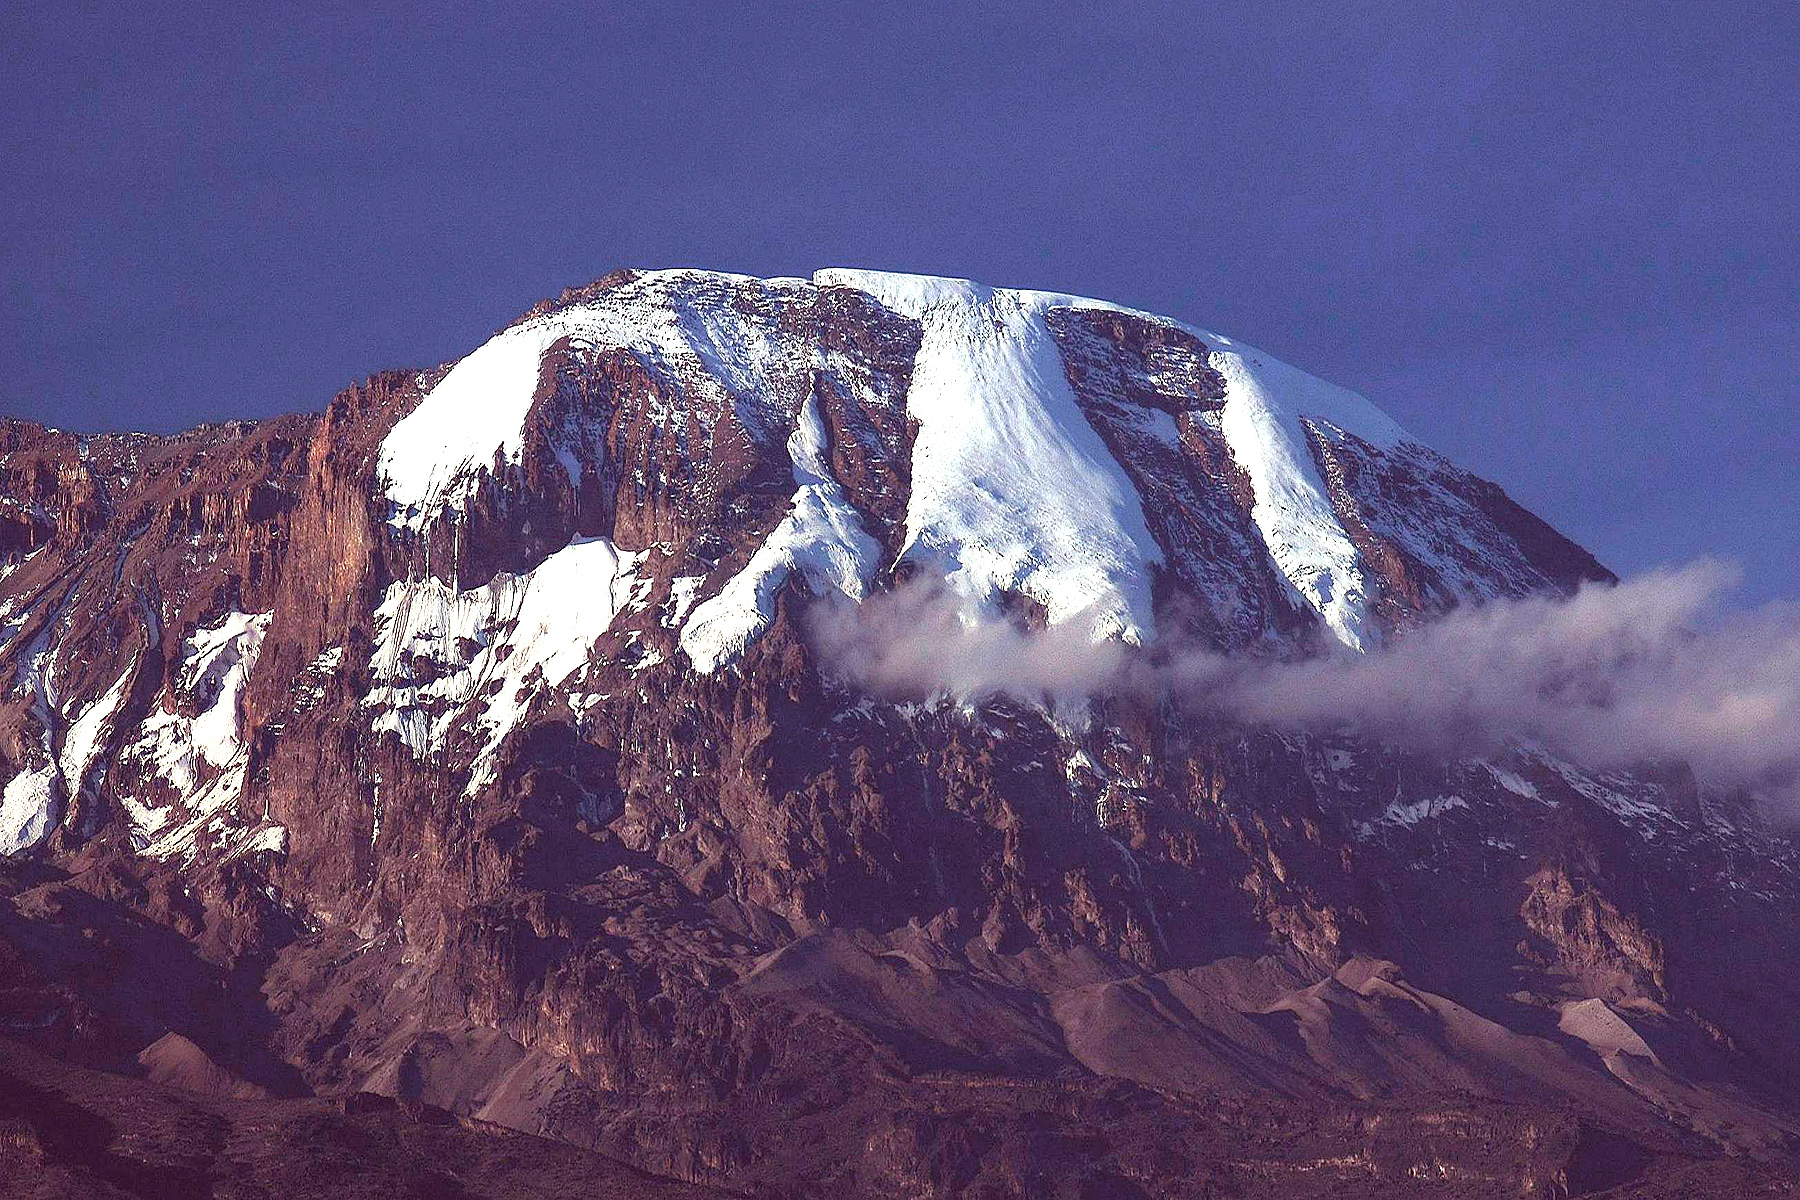 Eclipse 2004 - Mt Kilimanjaro - A05 - View